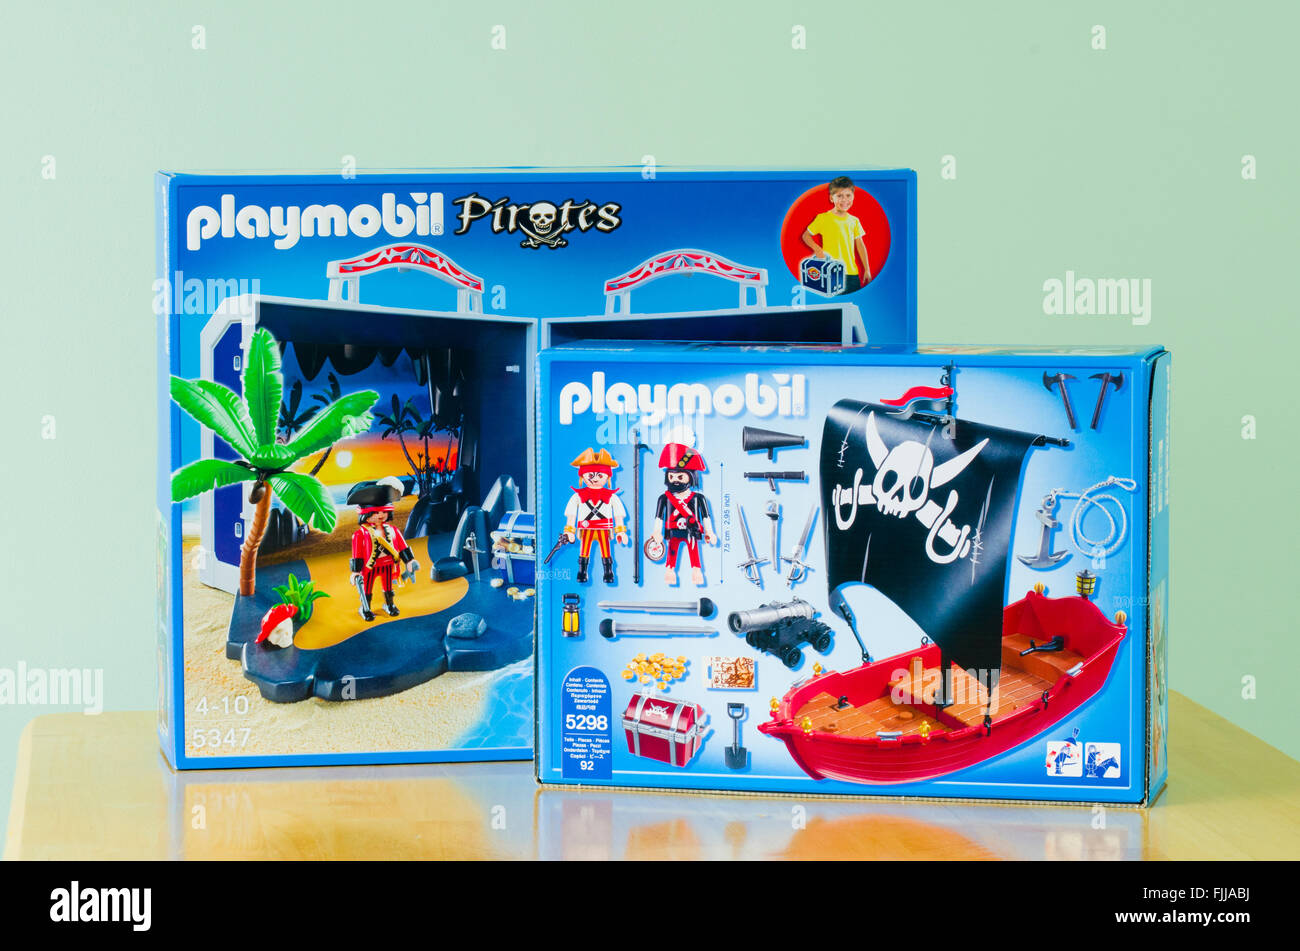 Playmobil piratas infantiles jugar juegos en el envase exterior Fotografía  de stock - Alamy